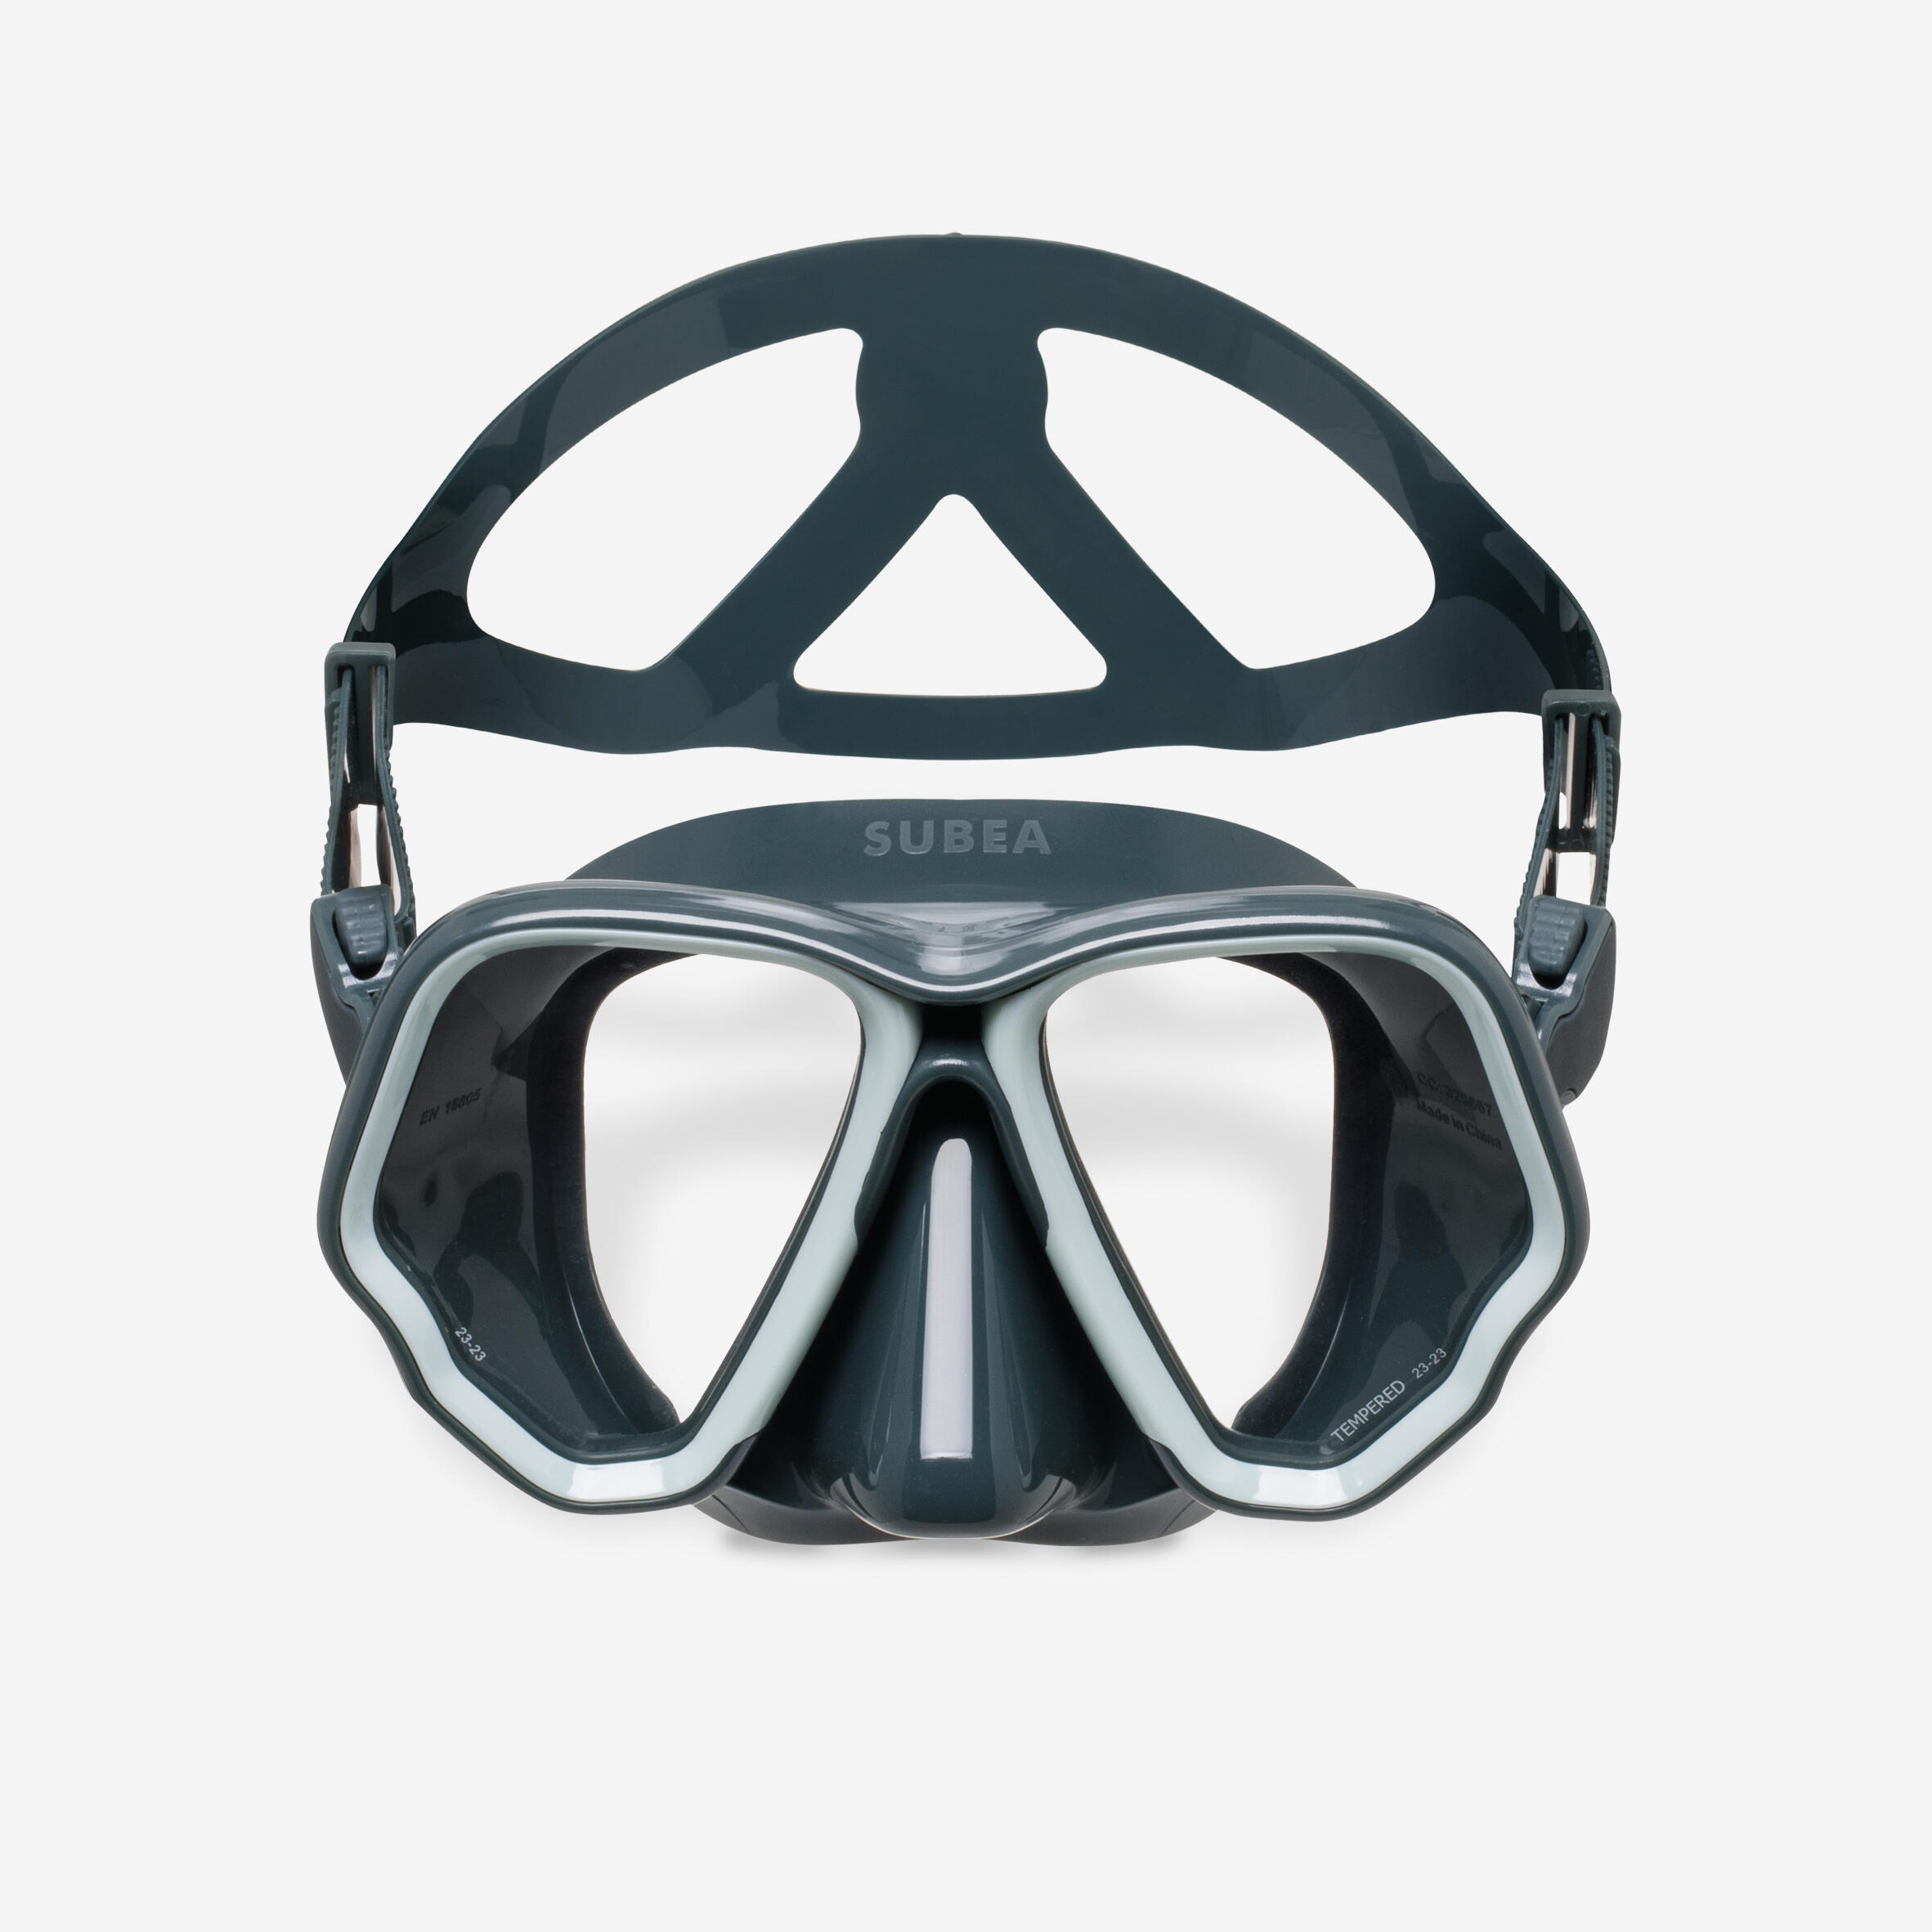 Diving mask - 500 Dual black khaki 2/7